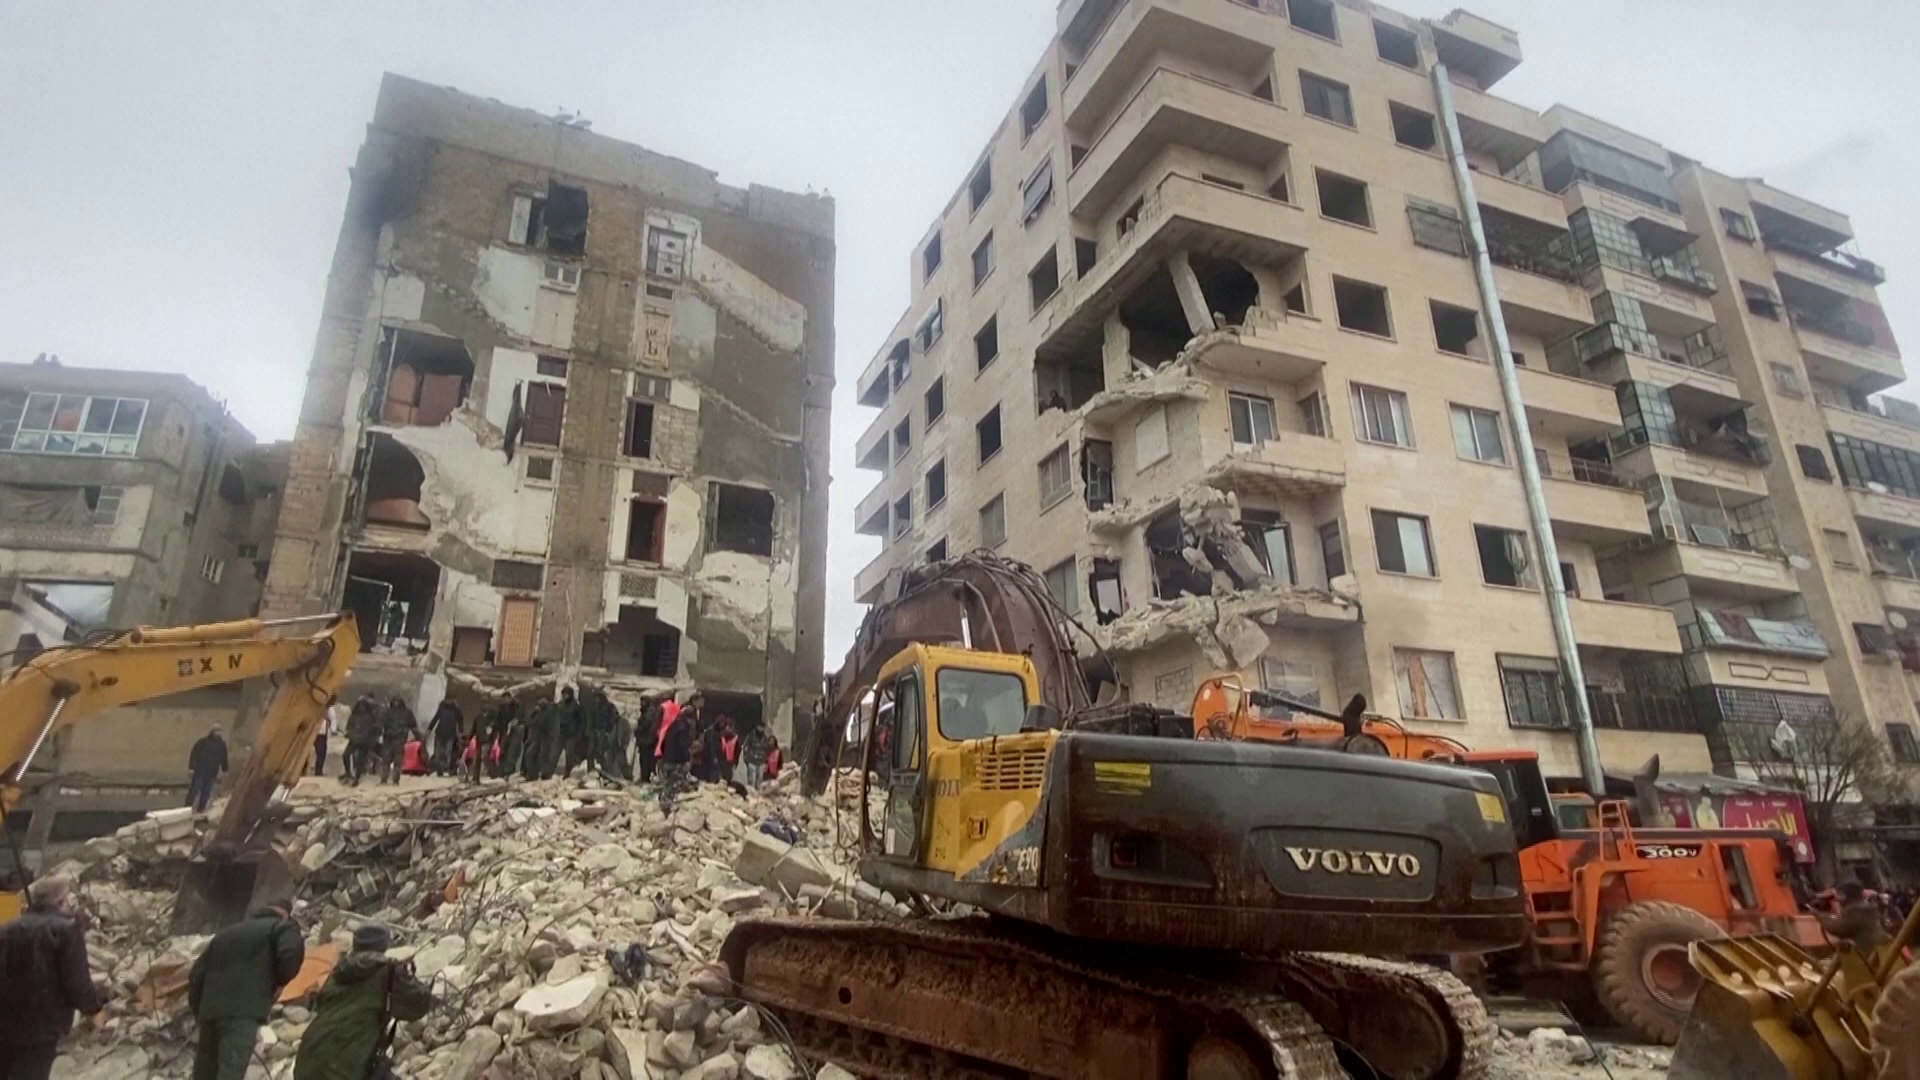 Elindult az 55 fős mentőcsapat Törökországba, a romok alatt rekedt személyeket kutatják